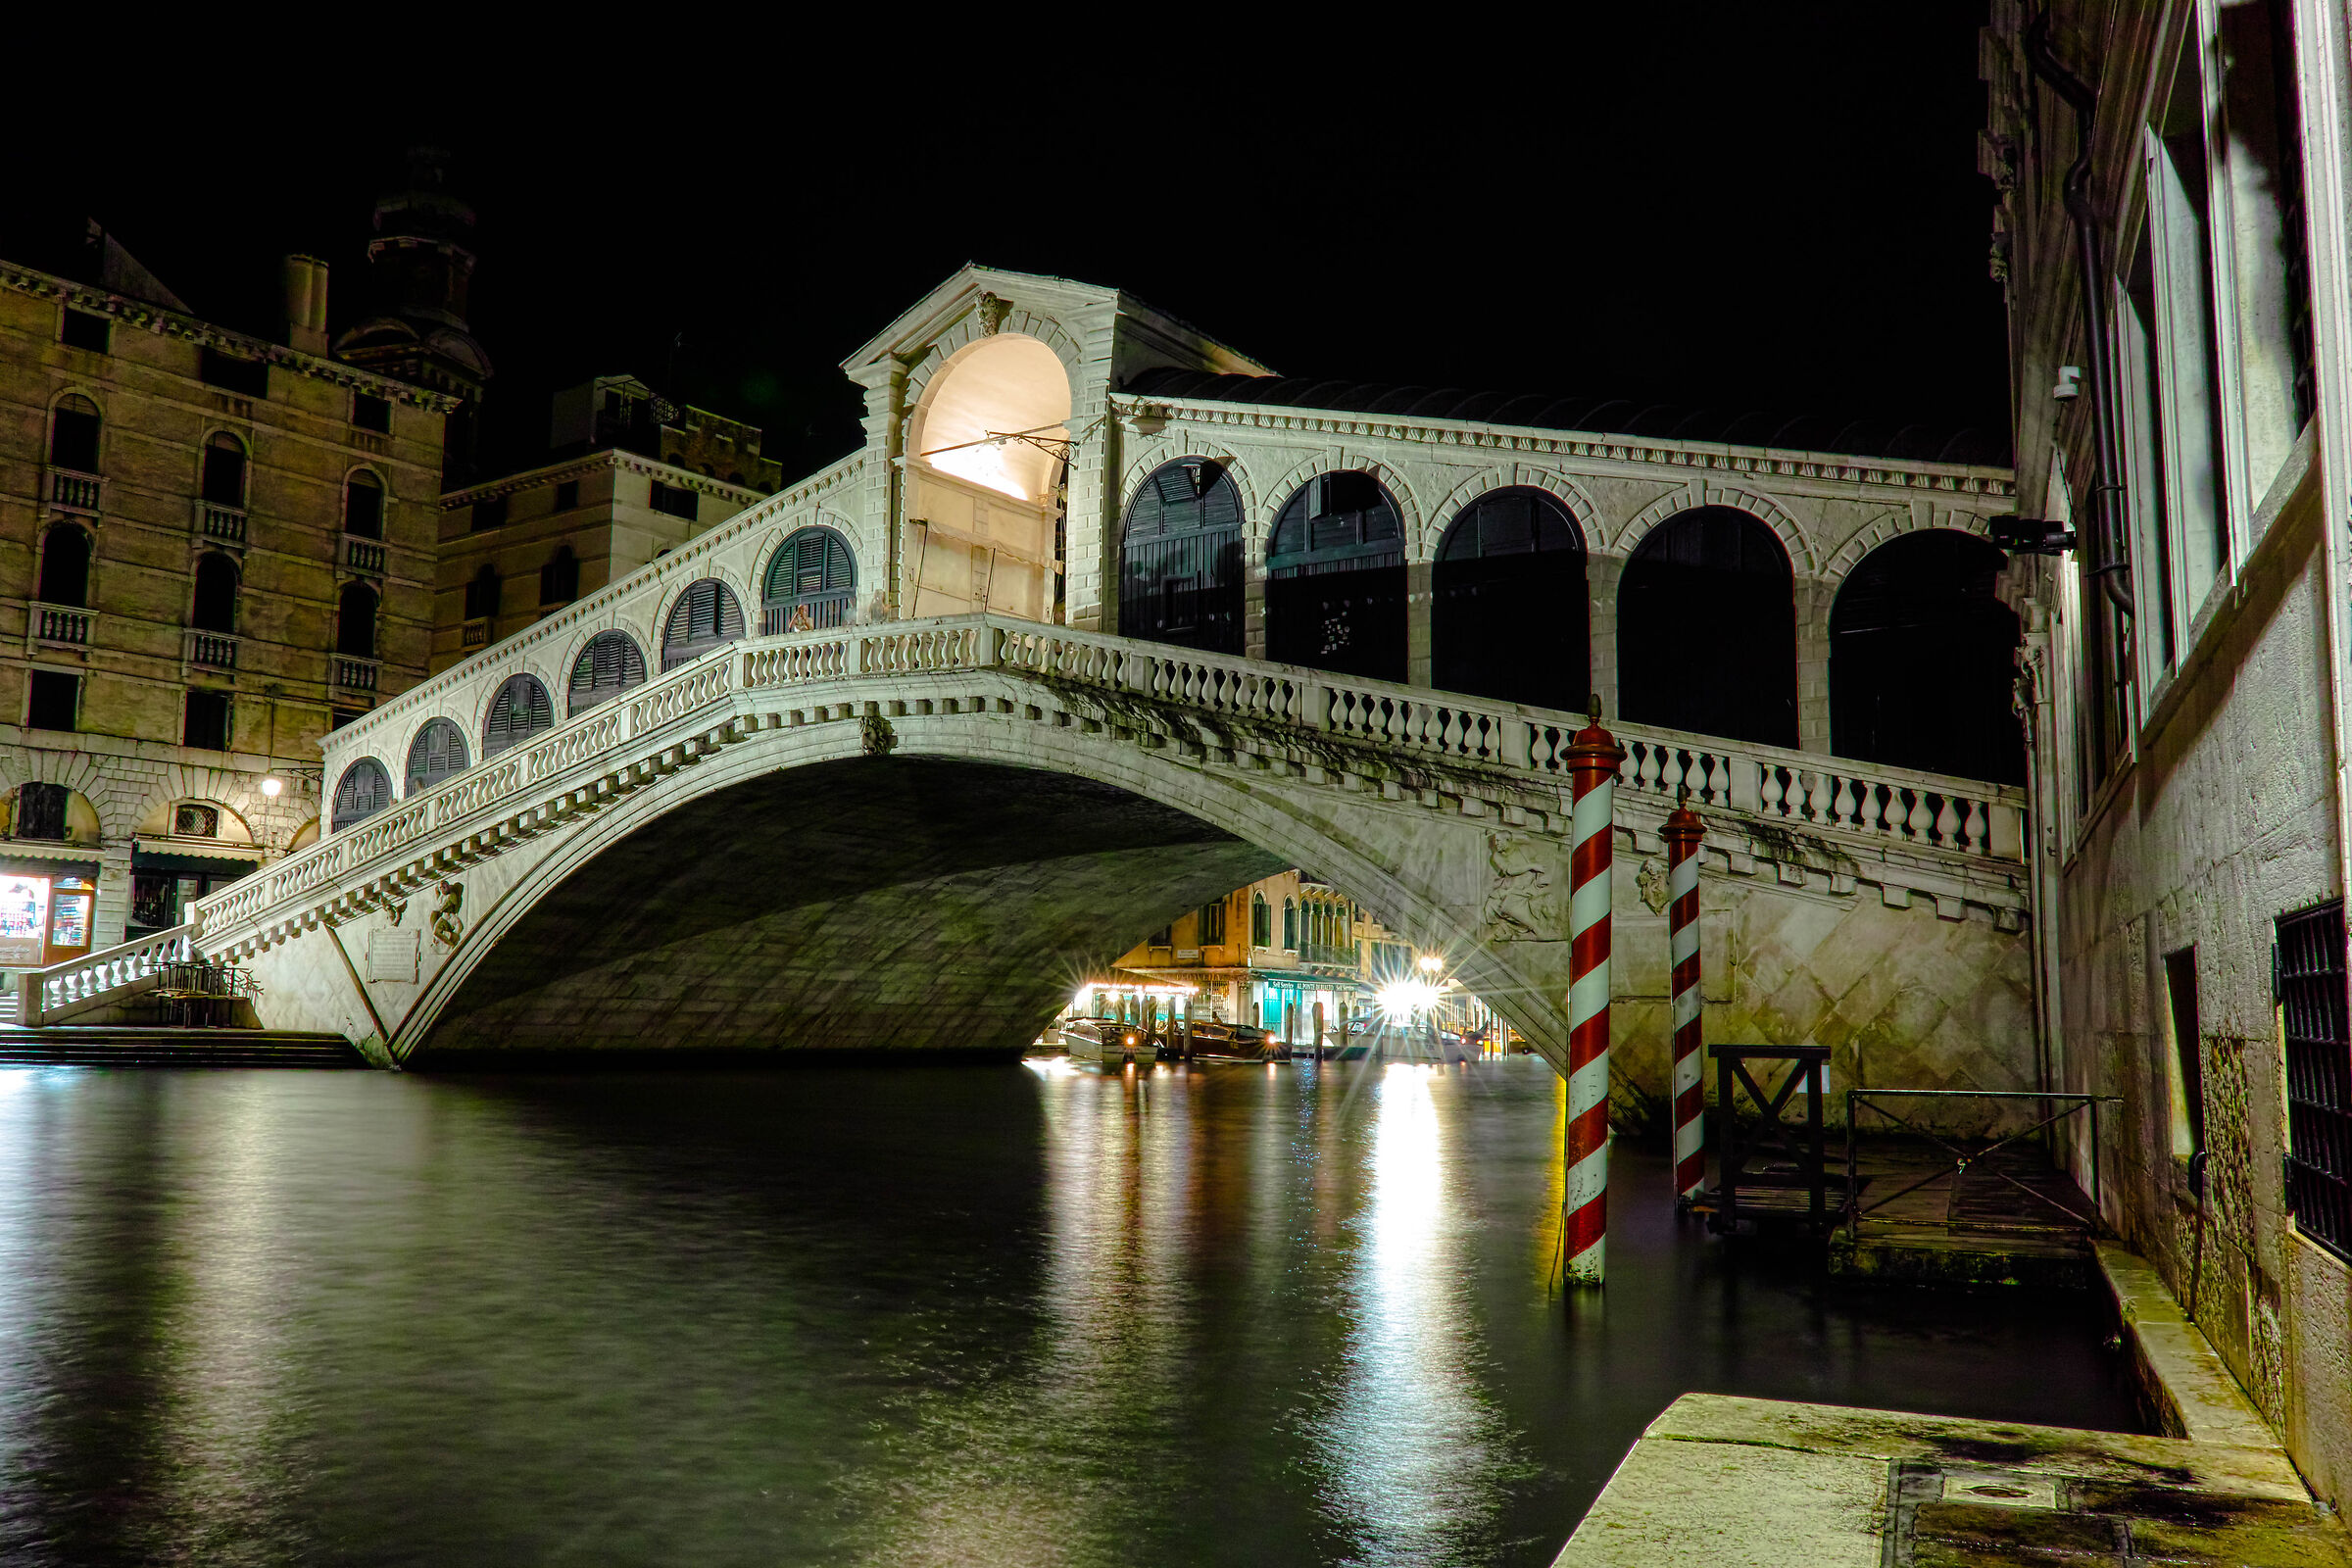 Bridge in the night...